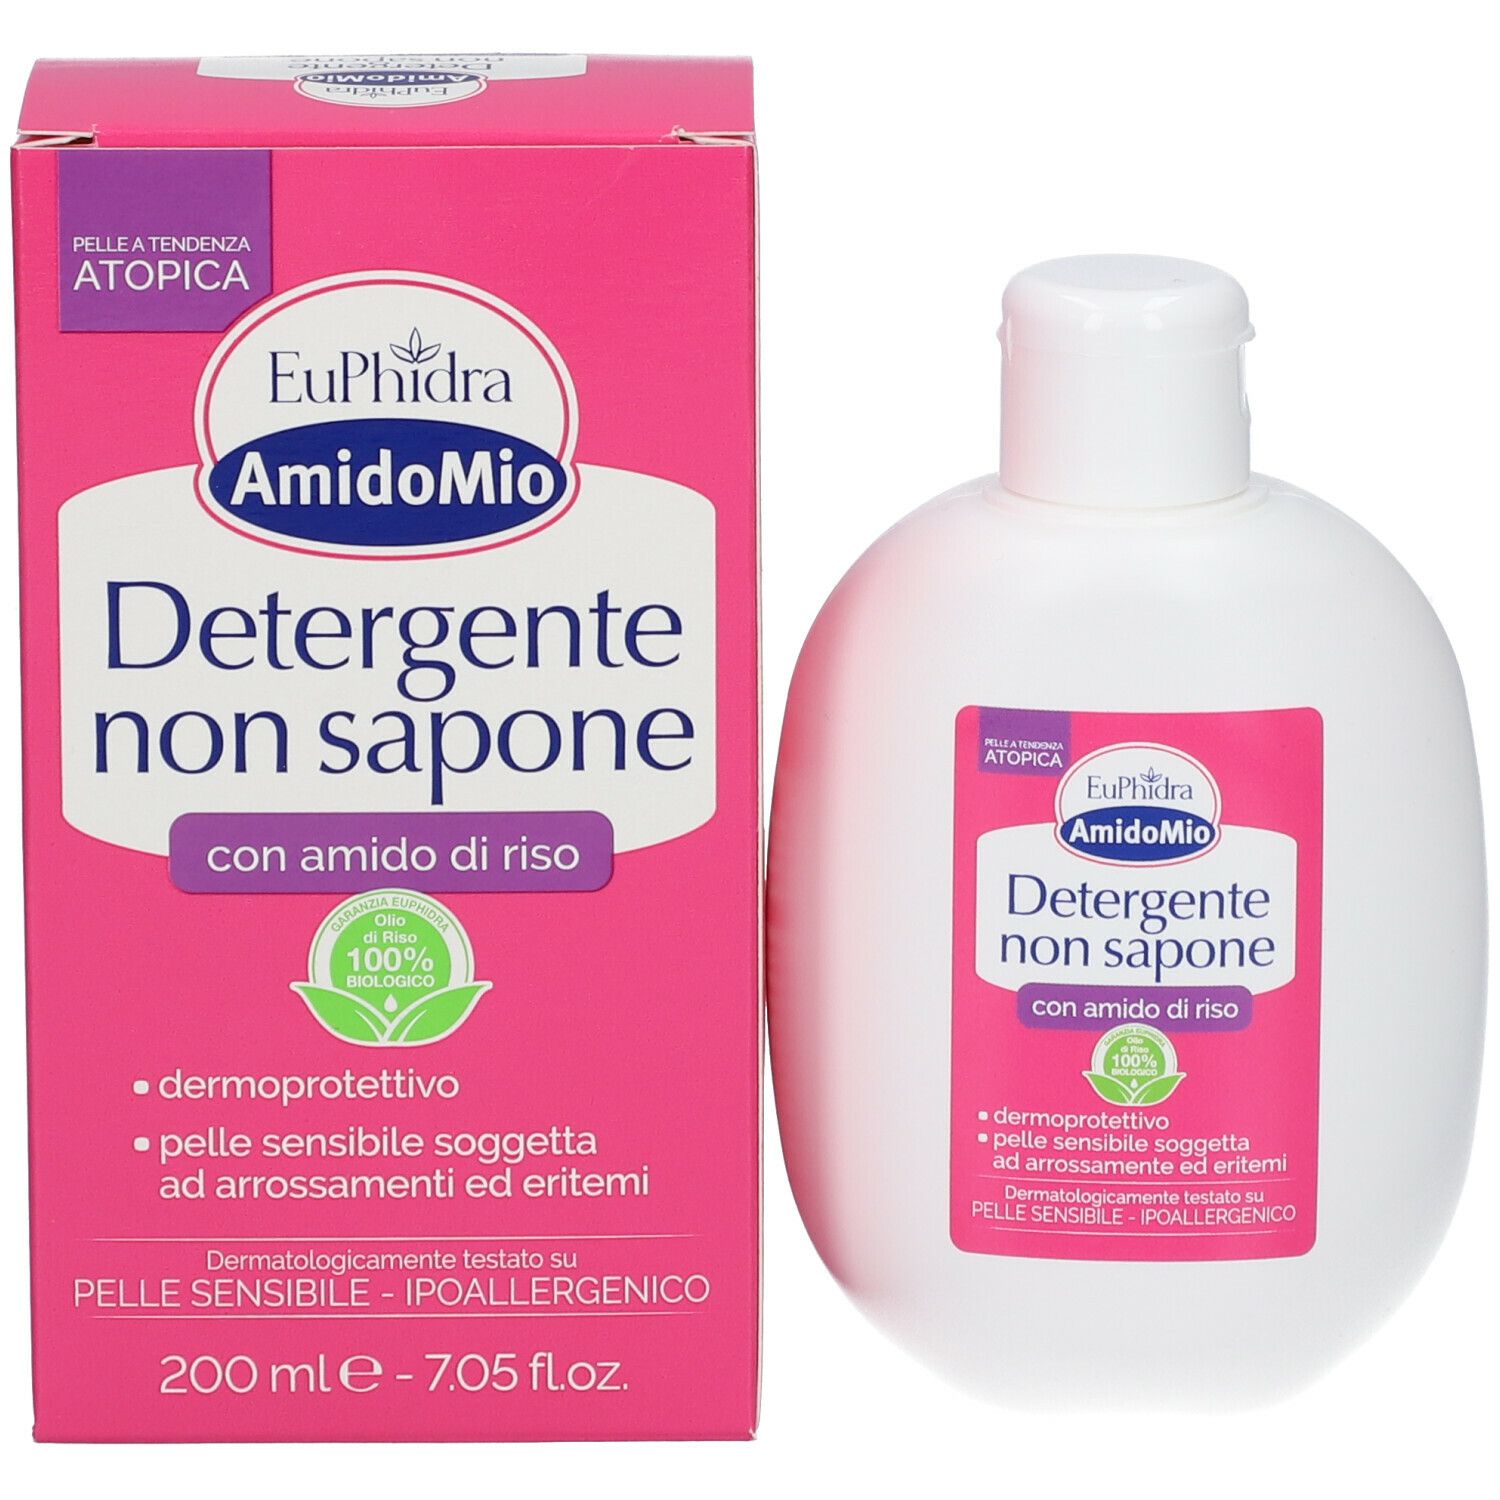 Euphidra Amido Mio Detergente Non Sapone